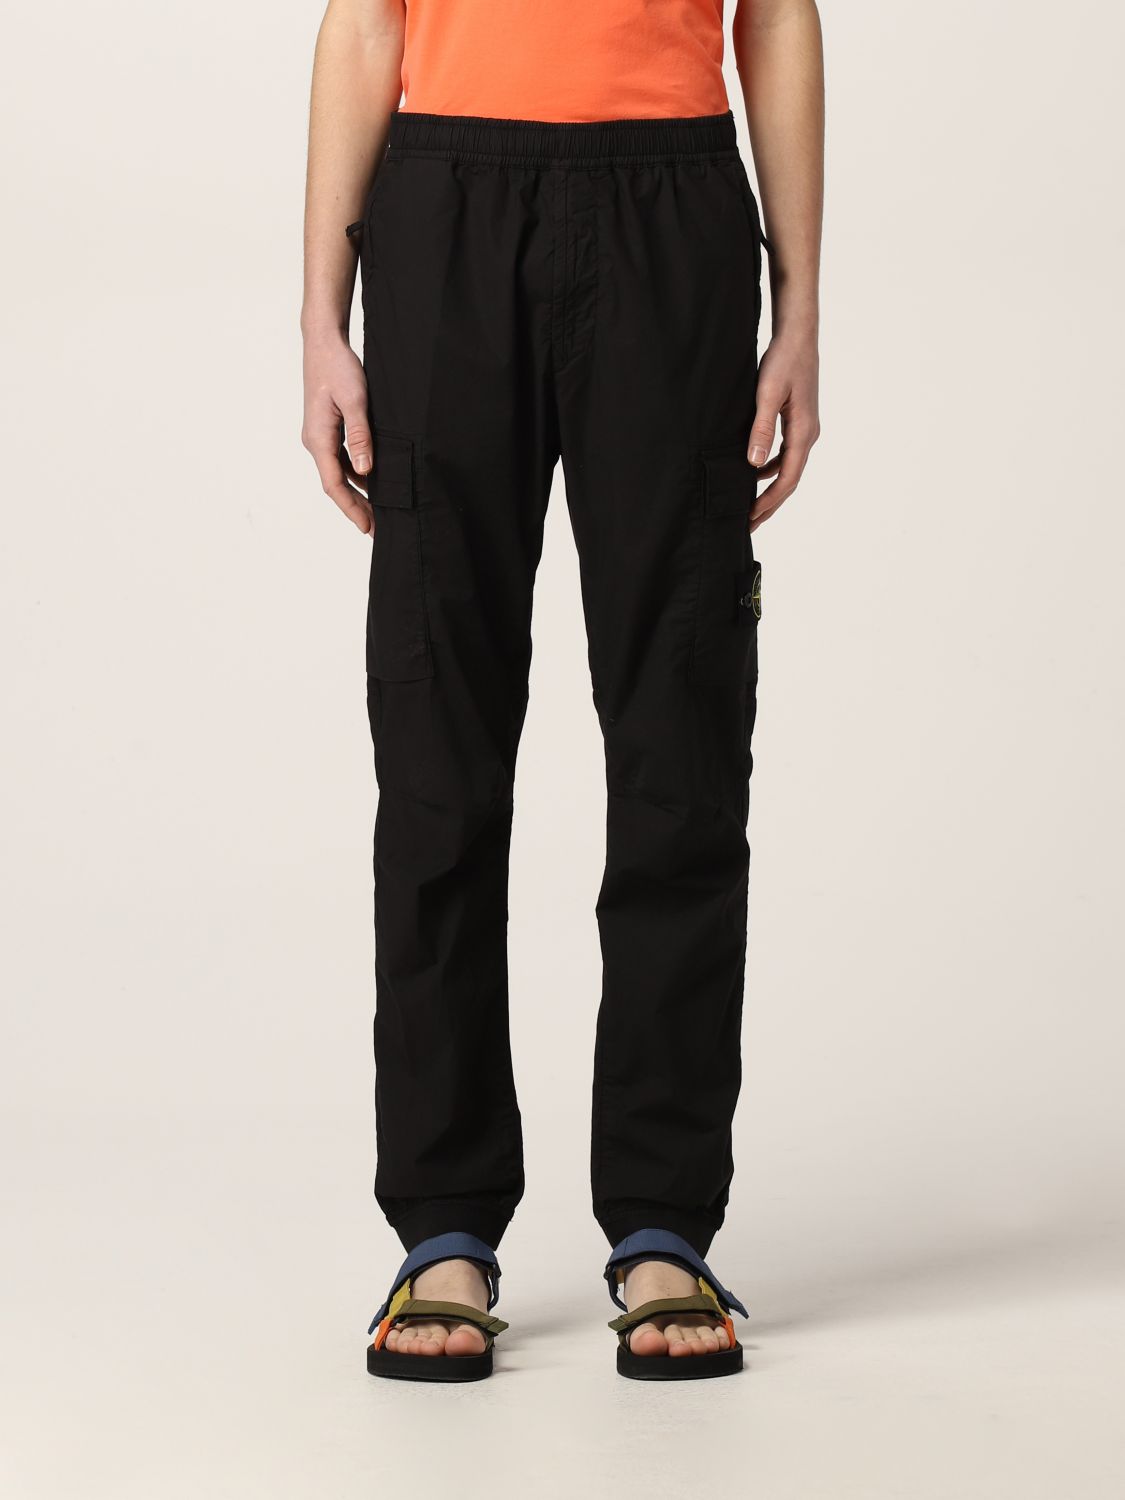 Pantalone cargo in cotone stretch con logo Giglio.com Bambino Abbigliamento Pantaloni e jeans Pantaloni Pantaloni cargo 